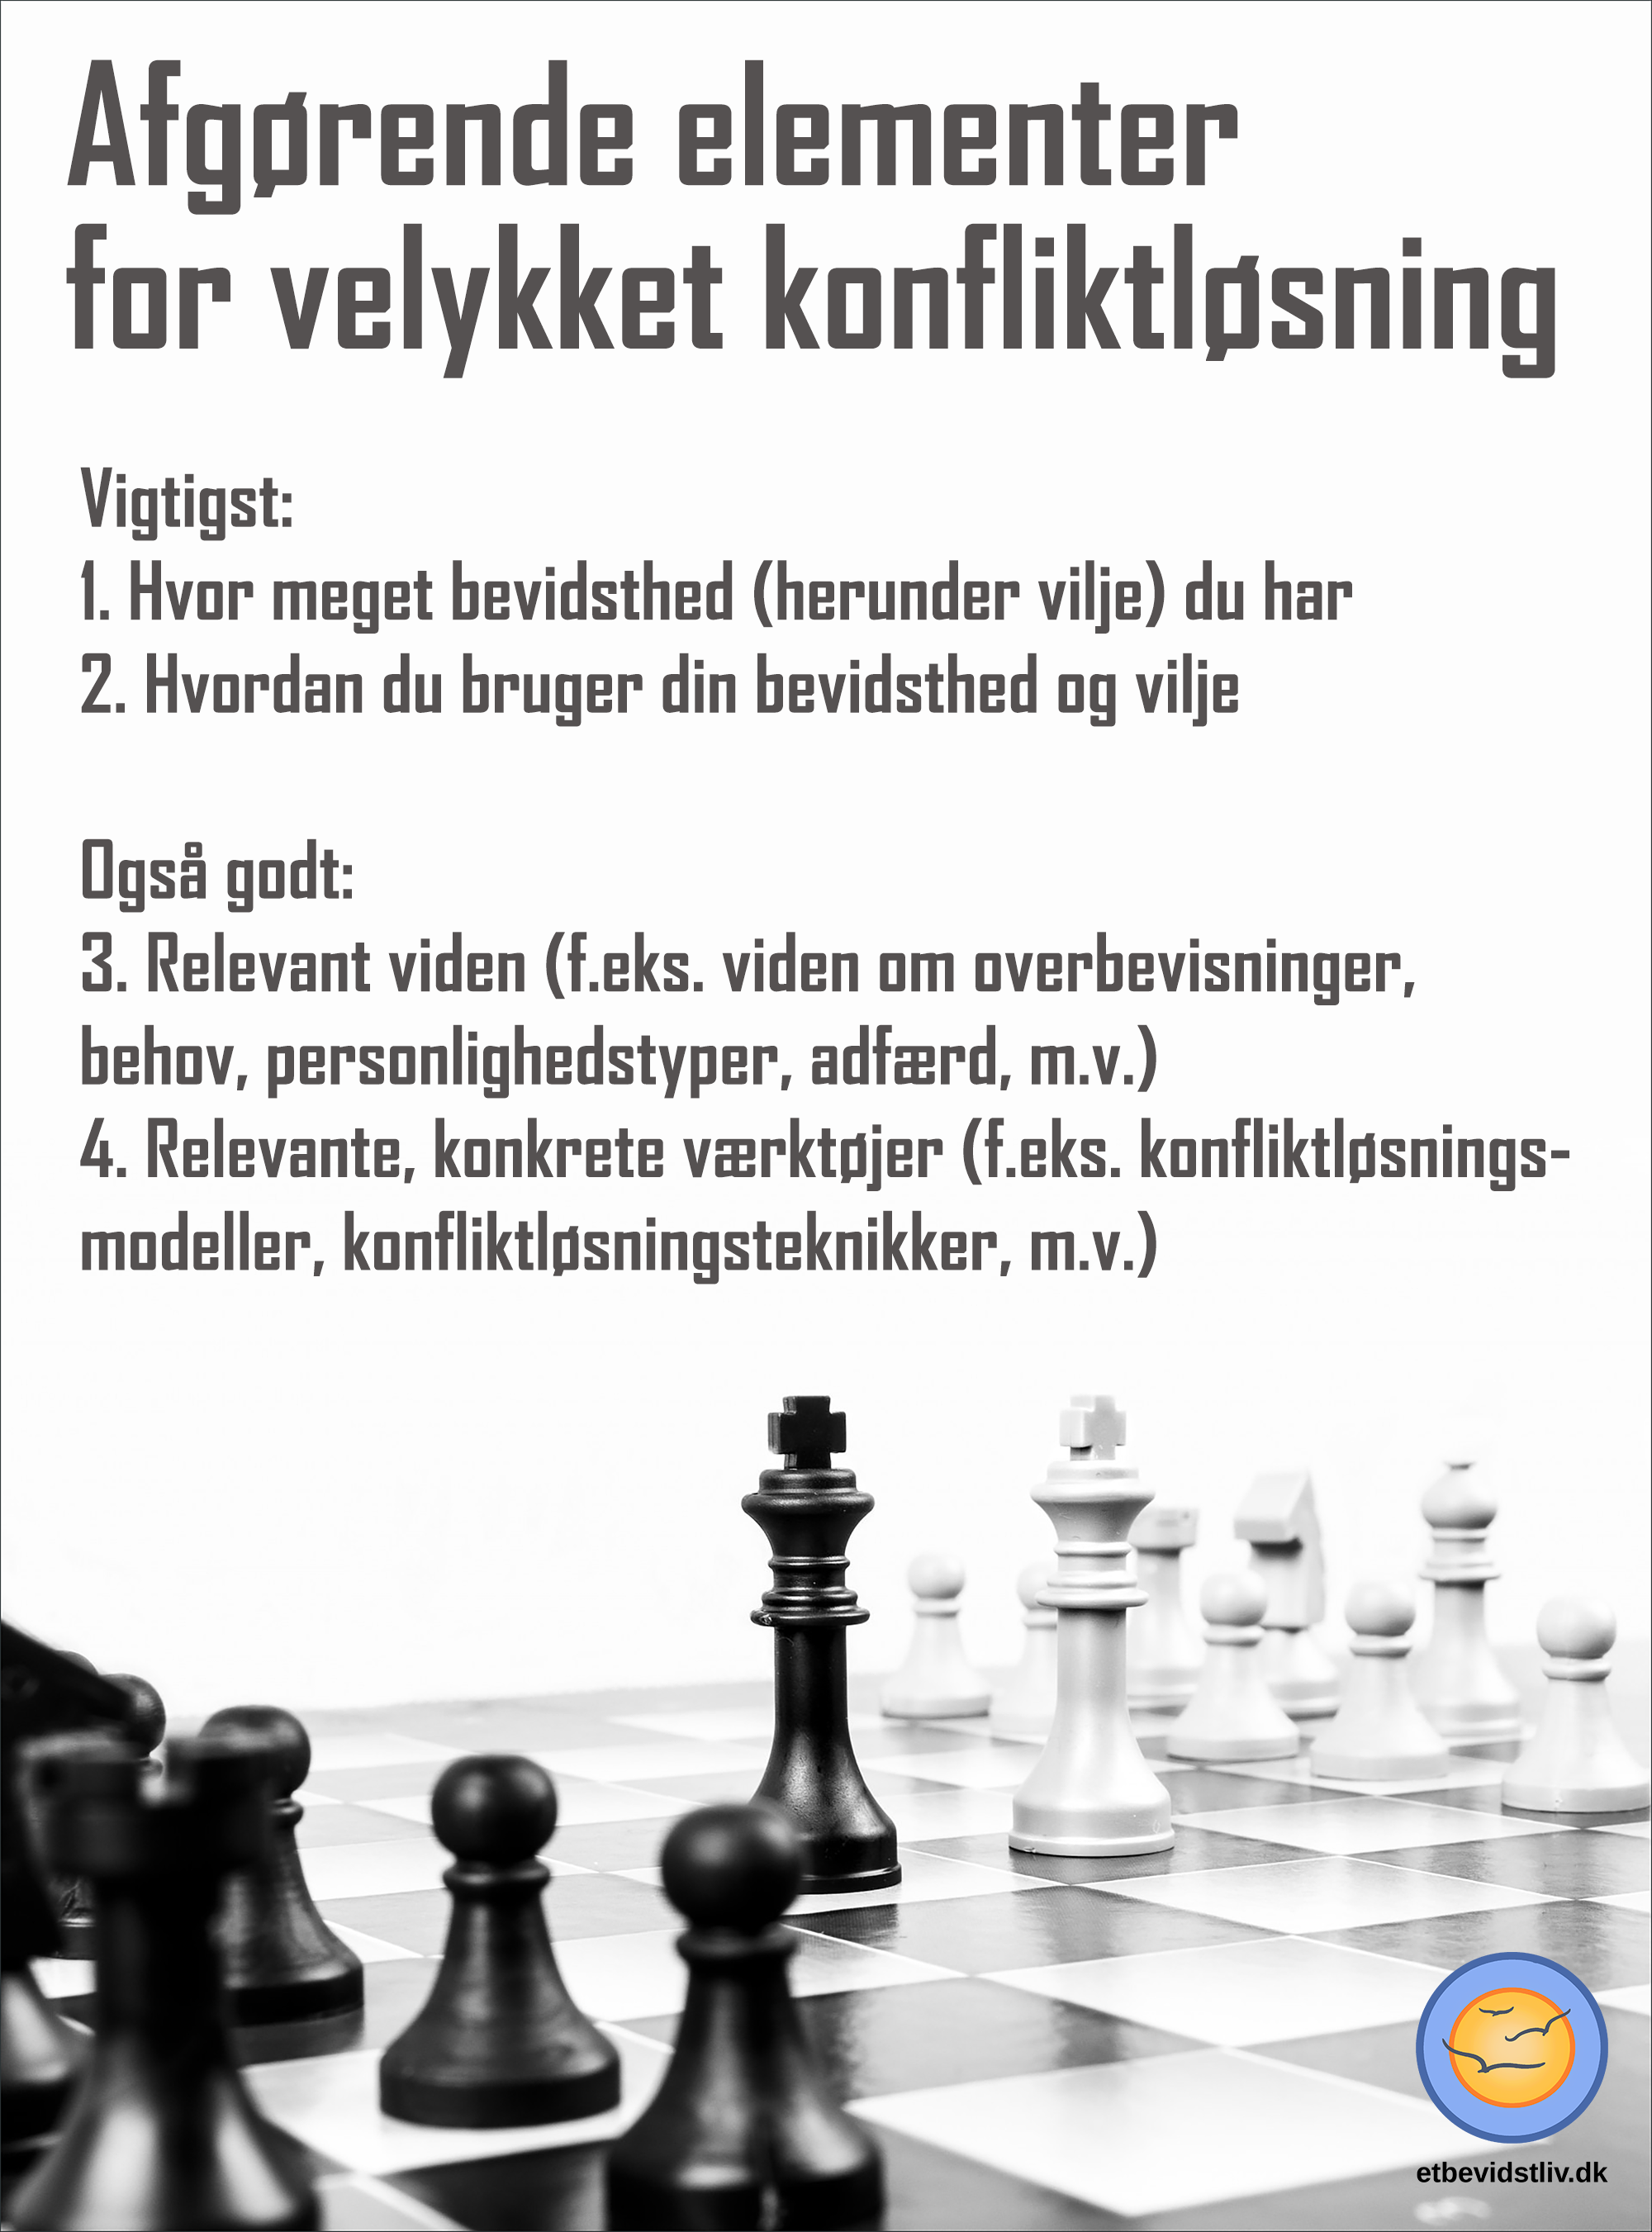 Nogle af de vigtigste elementer for vellykket konfliktløsning er brugen af bevidsthed og vilje. Billede af skakbrikker.